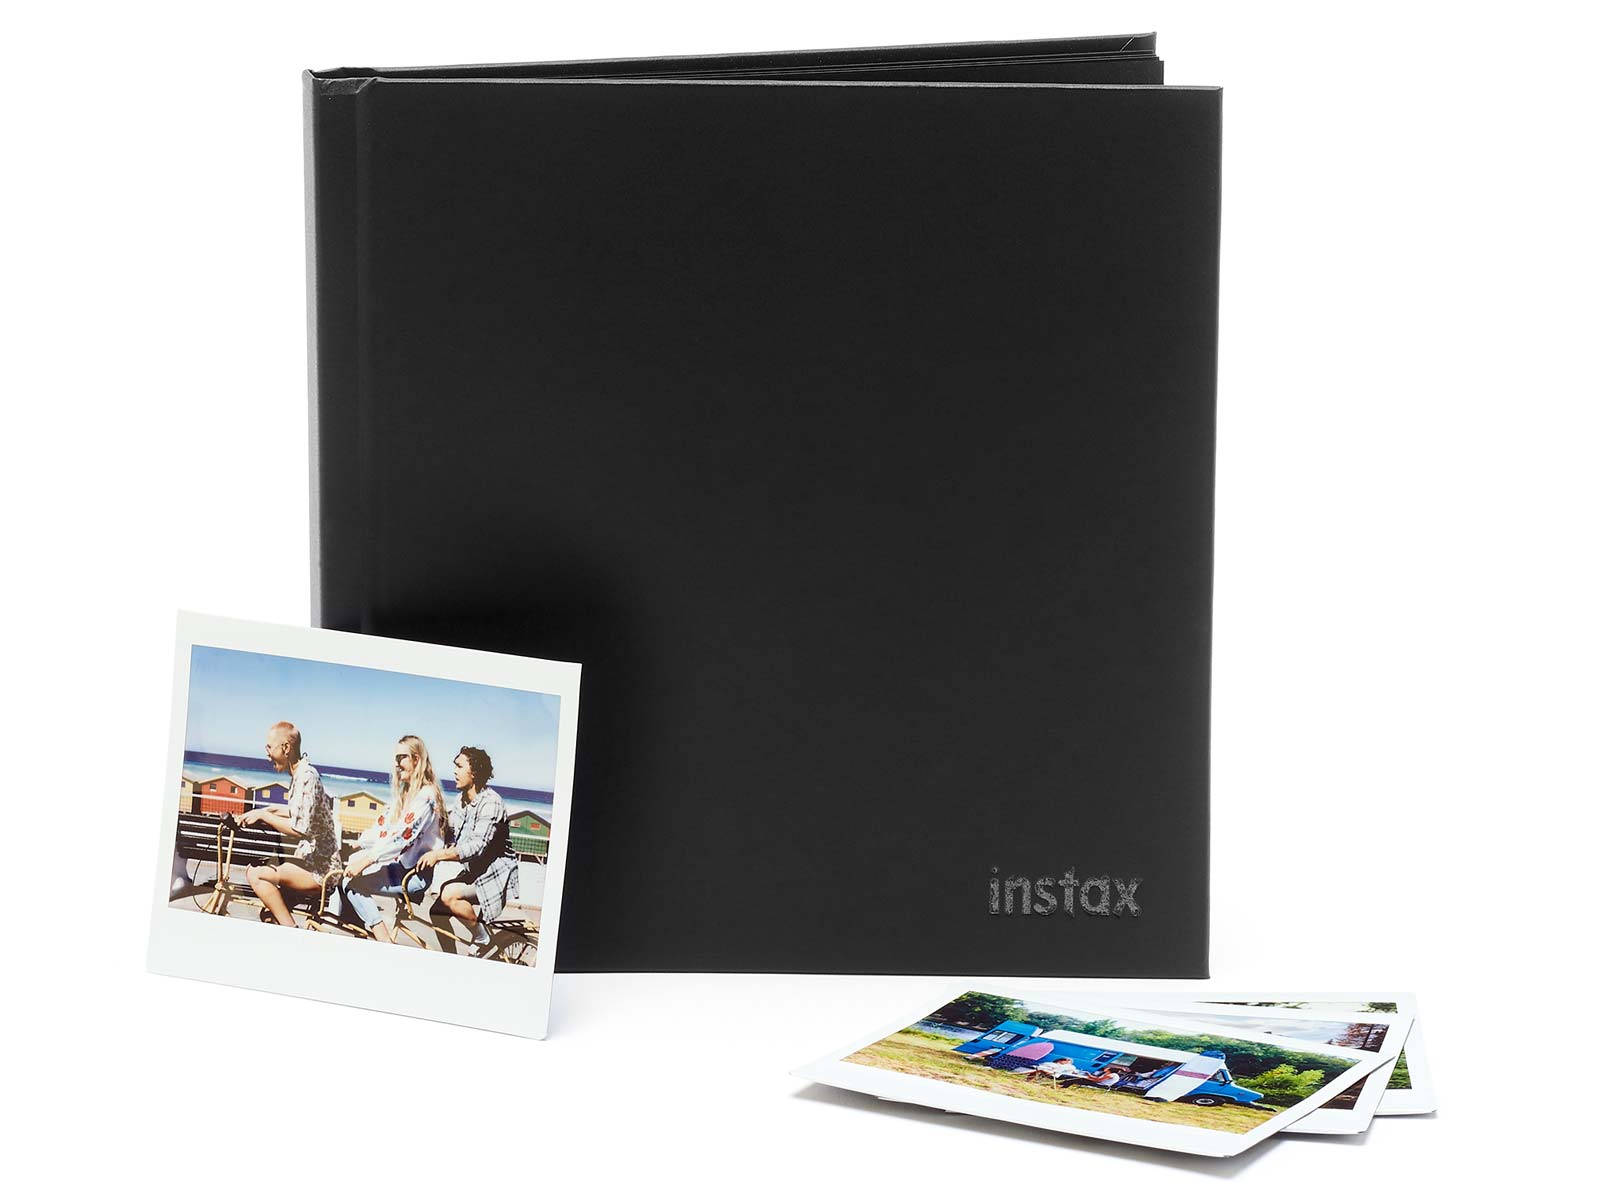 Instax Mini Photo Album, Fujifilm Instax Mini Photo Album